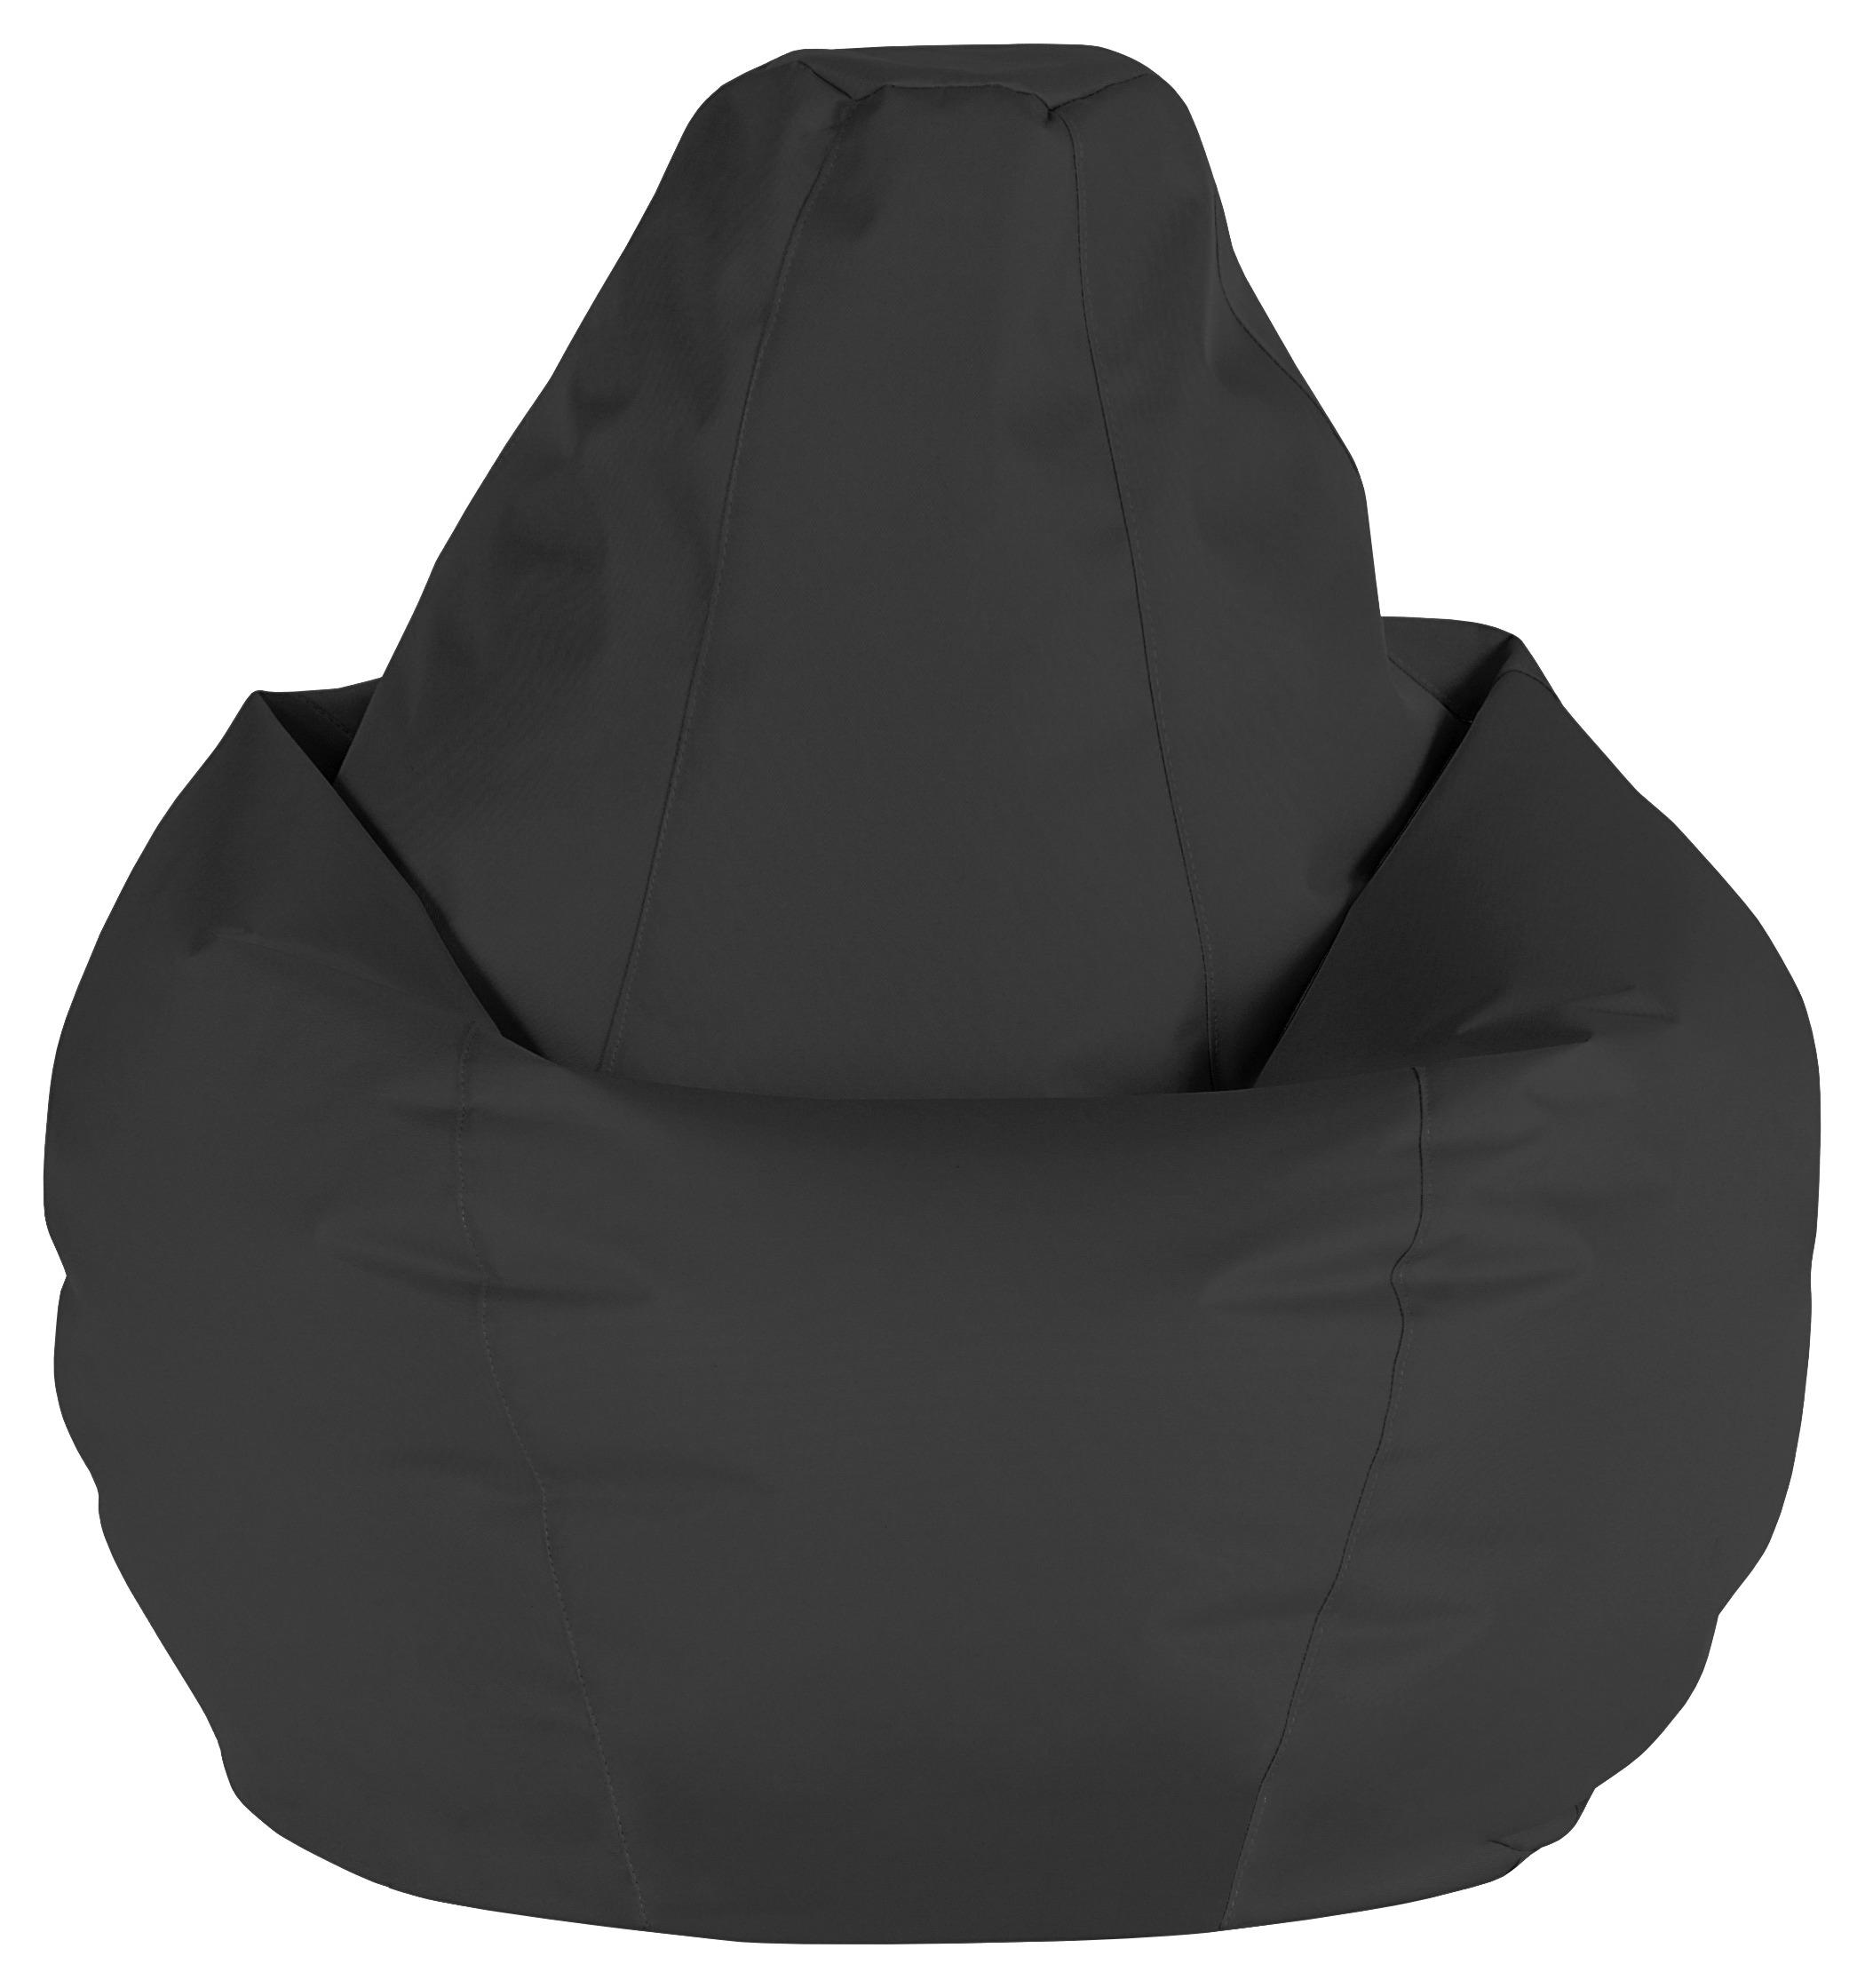 Vreča Za Sedenje Soft L - črna, Moderno, tekstil (120cm) - Modern Living